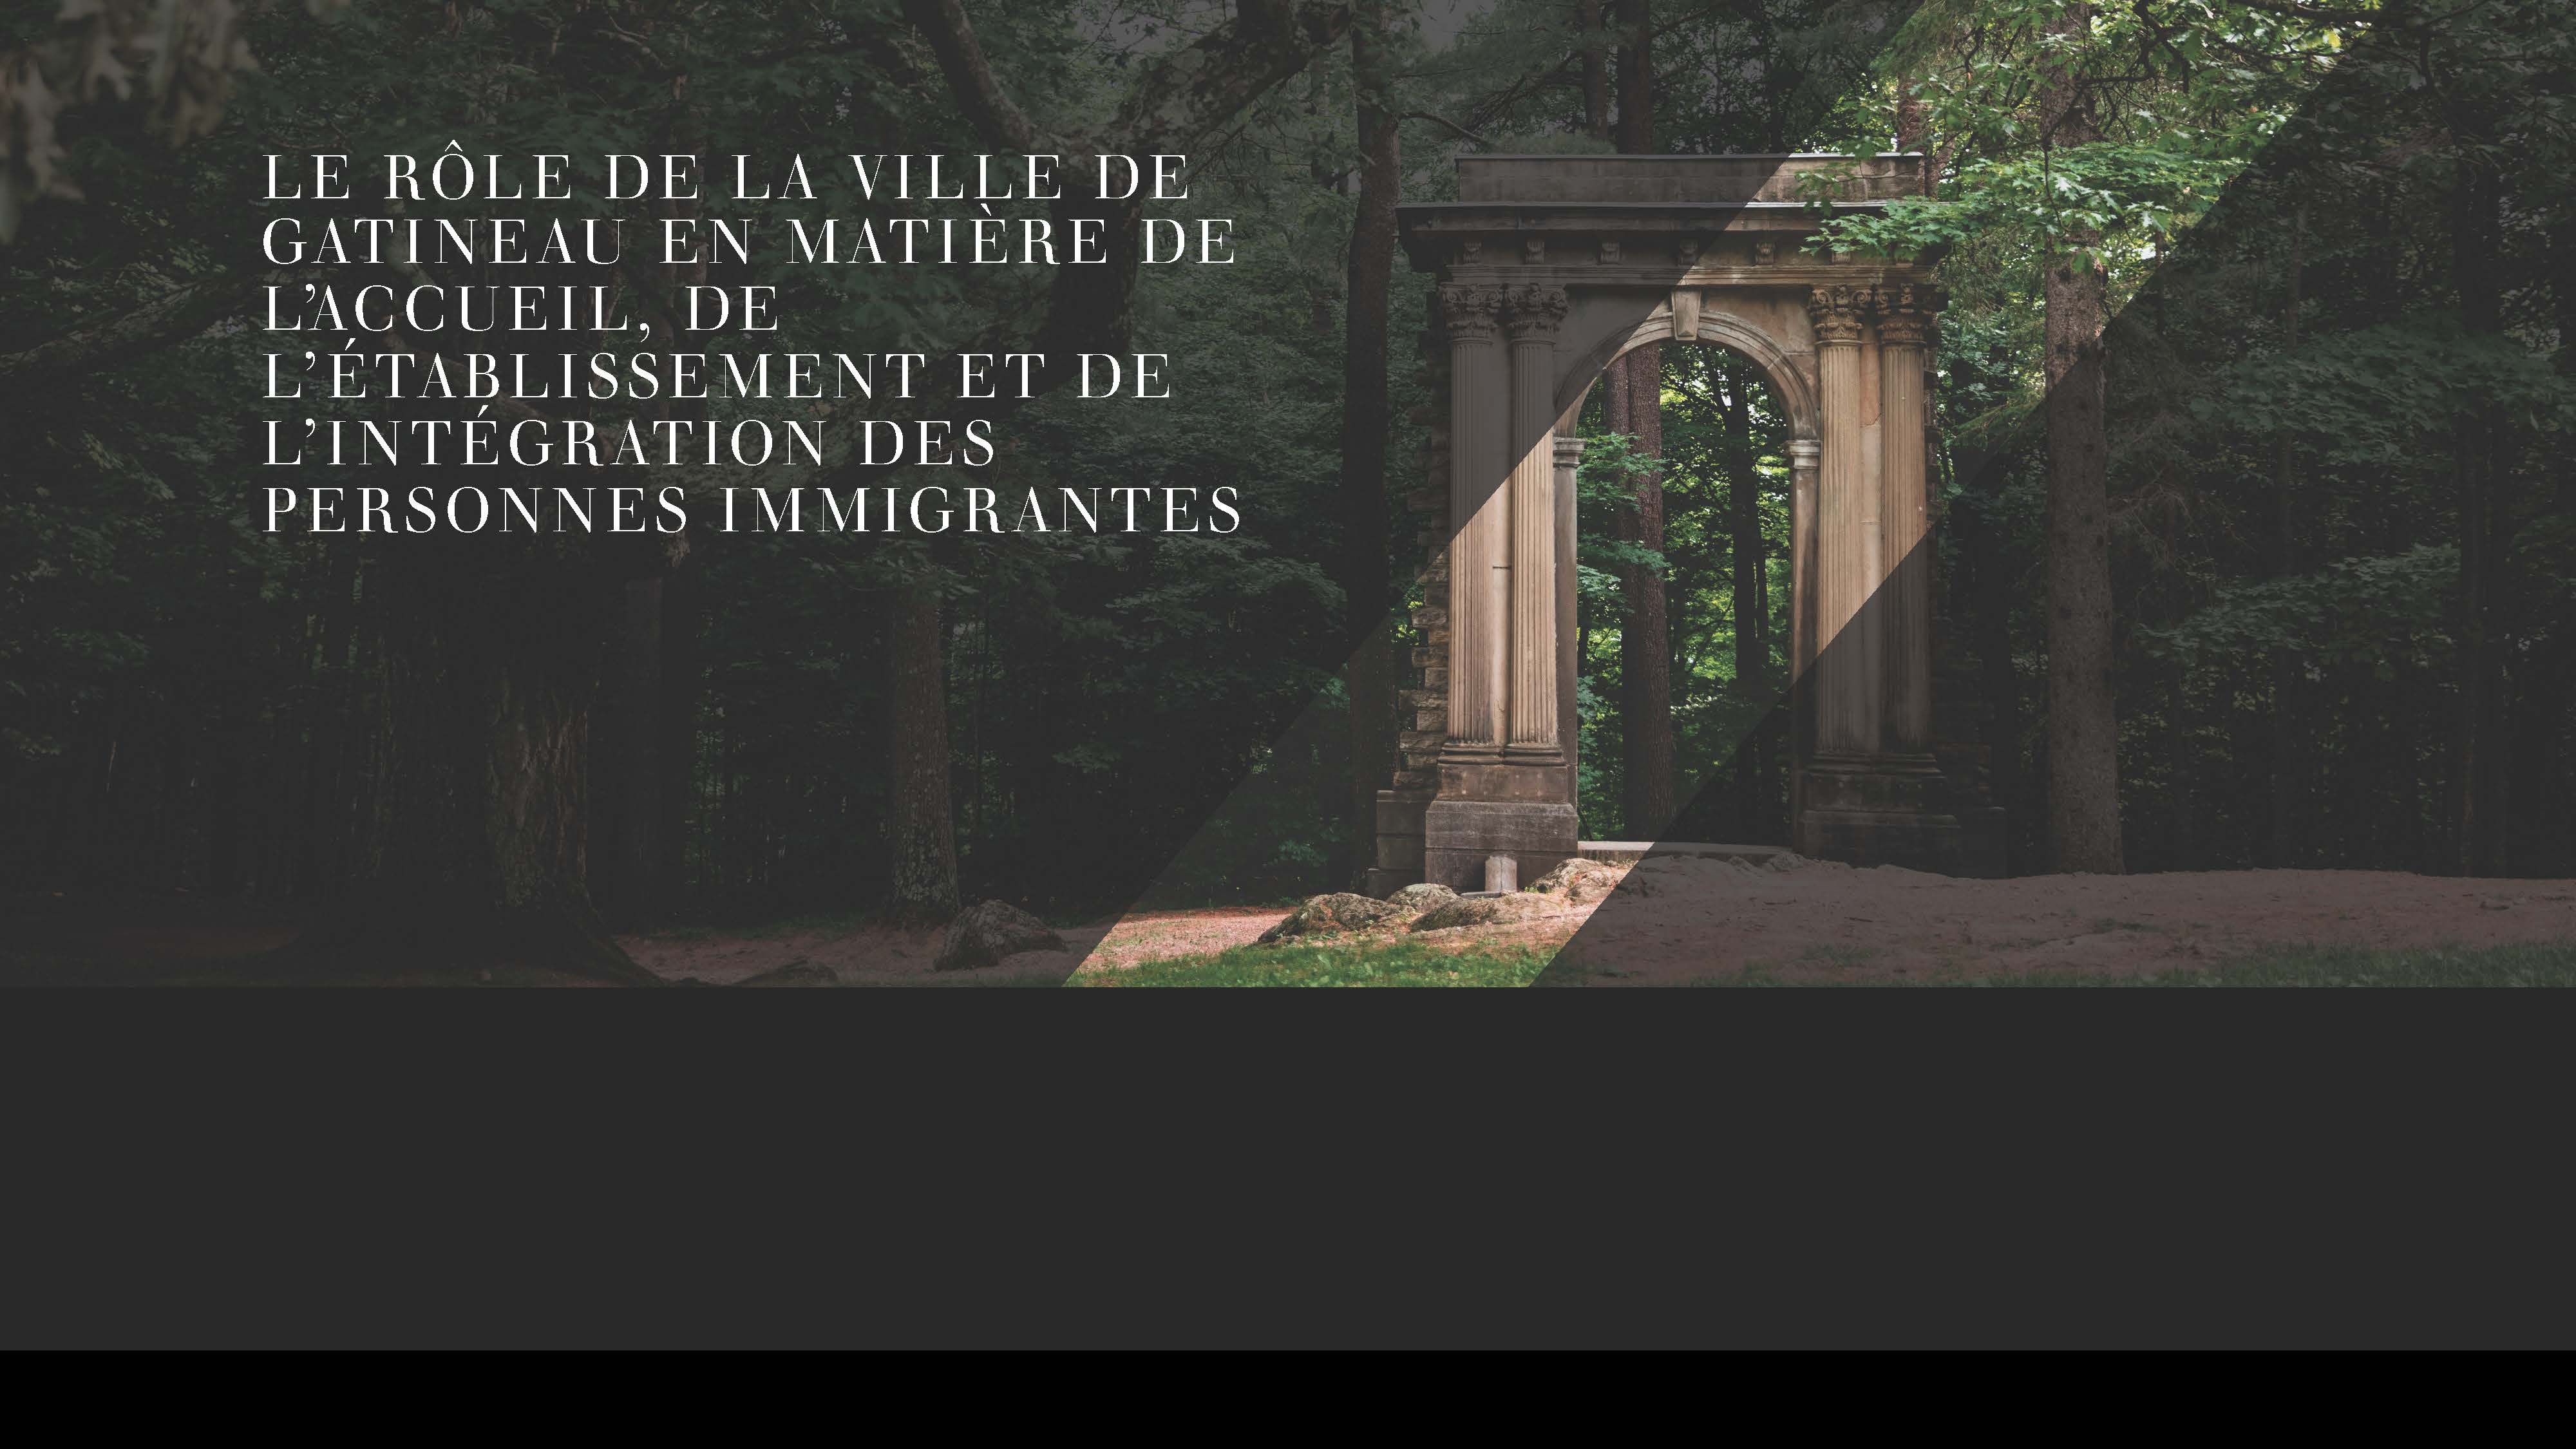 Le rôle de la Ville de Gatineau en matière de l’accueil, de l’établissement et de l’intégration des personnes immigrantes